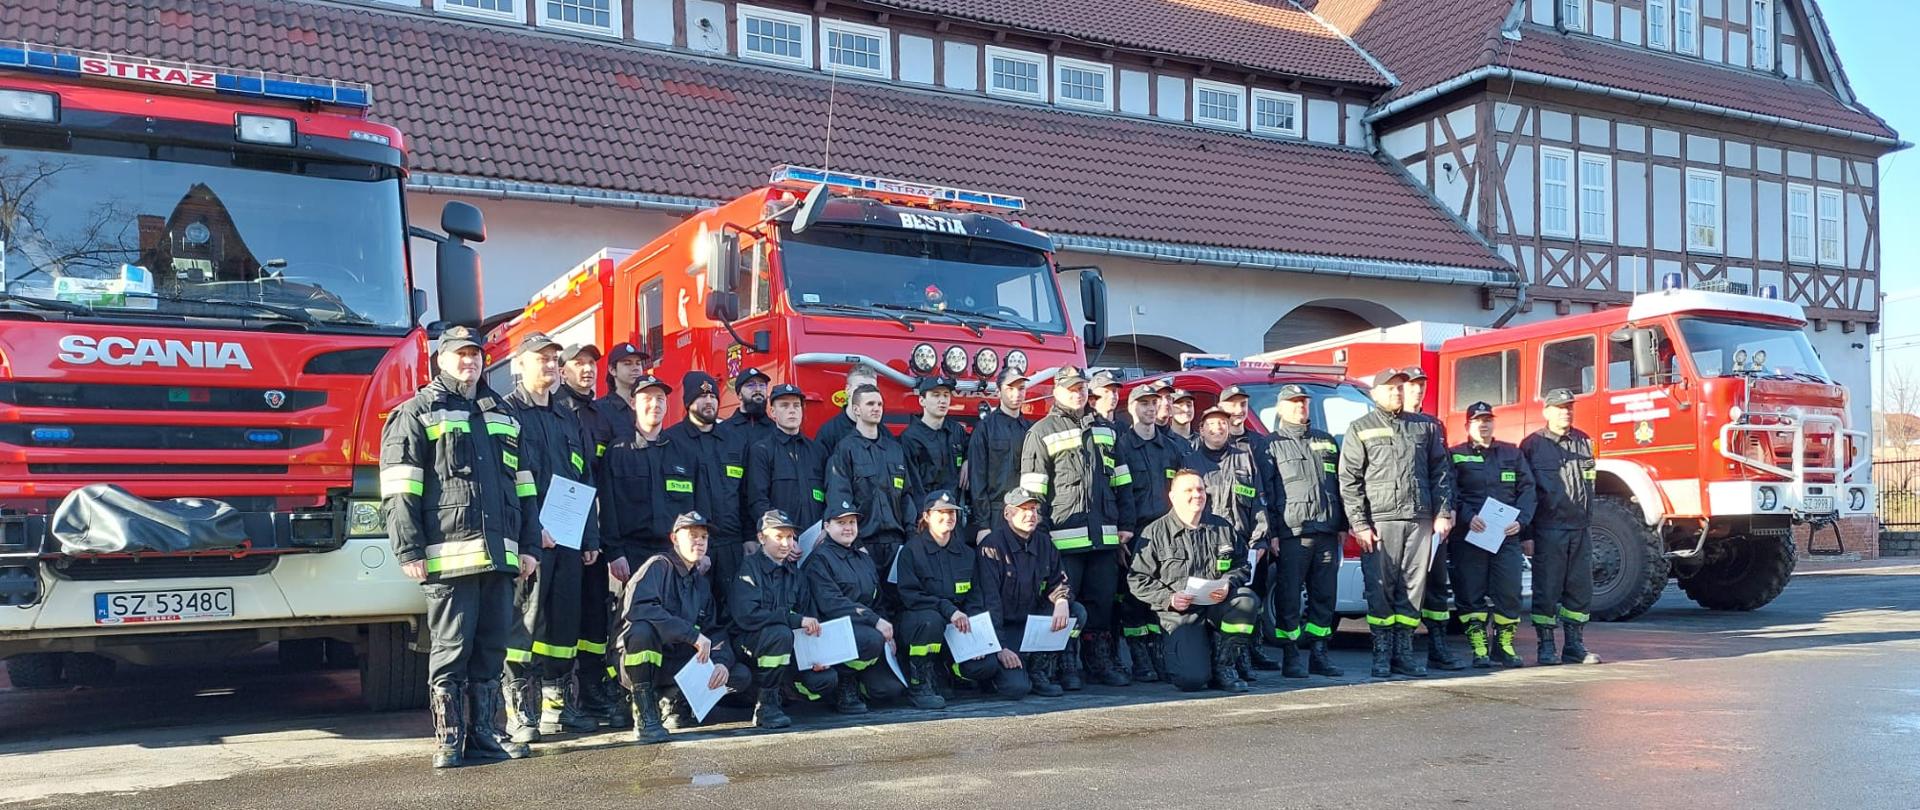 Zbiórka absolwentów szkolenia przed budynkiem Komendy Miejskiej Państwowej Straży Pożarnej w Zabrzu.